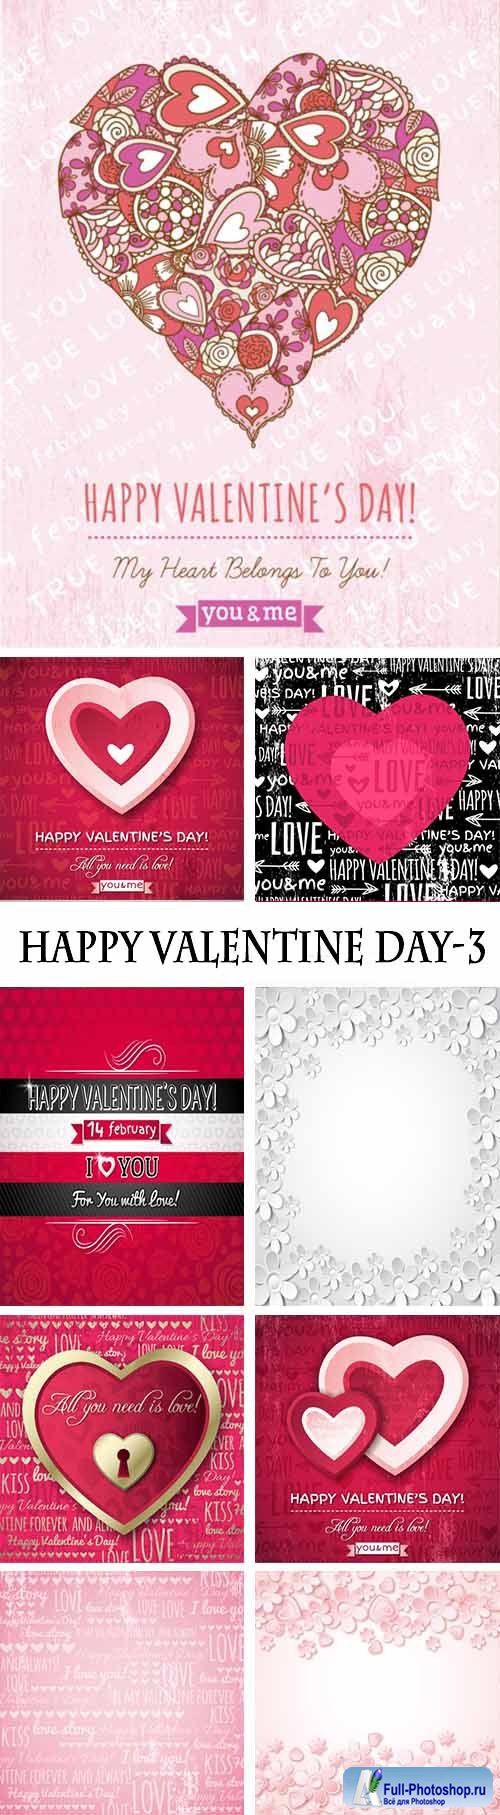 EM-Happy Valentine Day-3